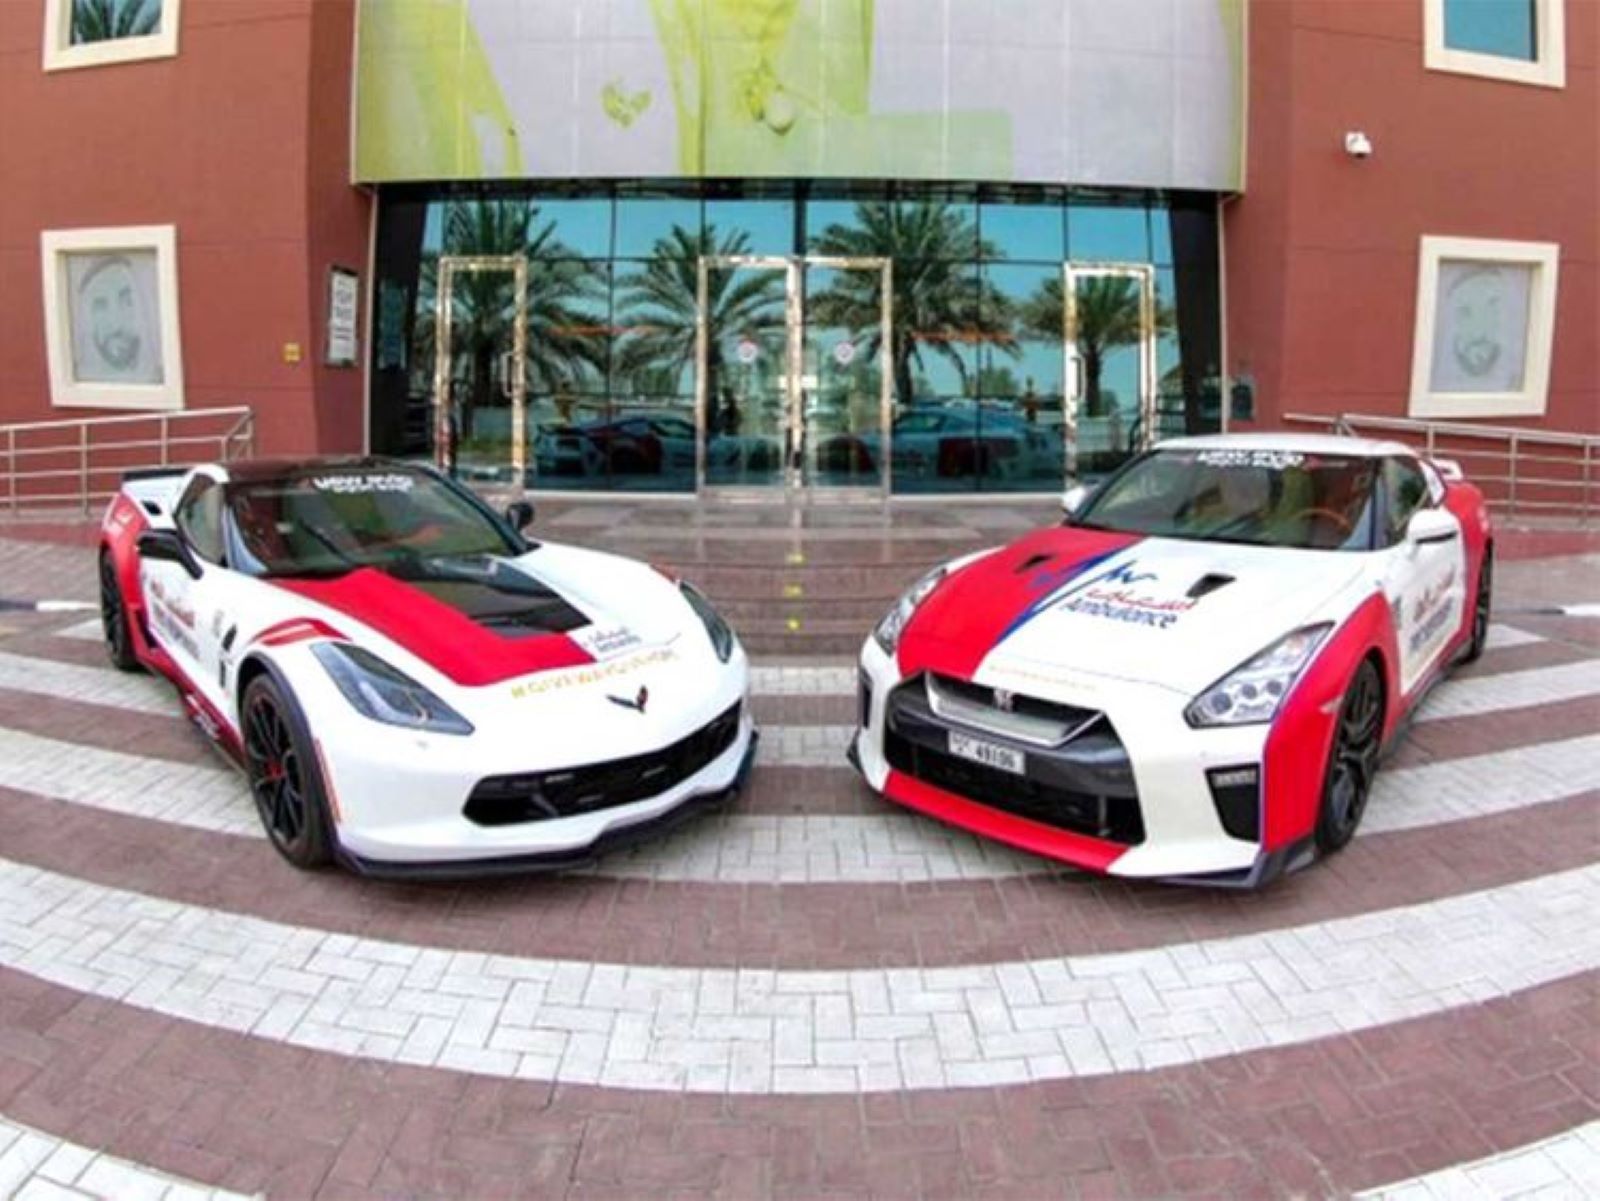 Парамедики Дубая будуть приїжджати до потерпілих на суперкарах. Нові автомобілі дозволять скоротити час реагування екстреної служби у два рази.